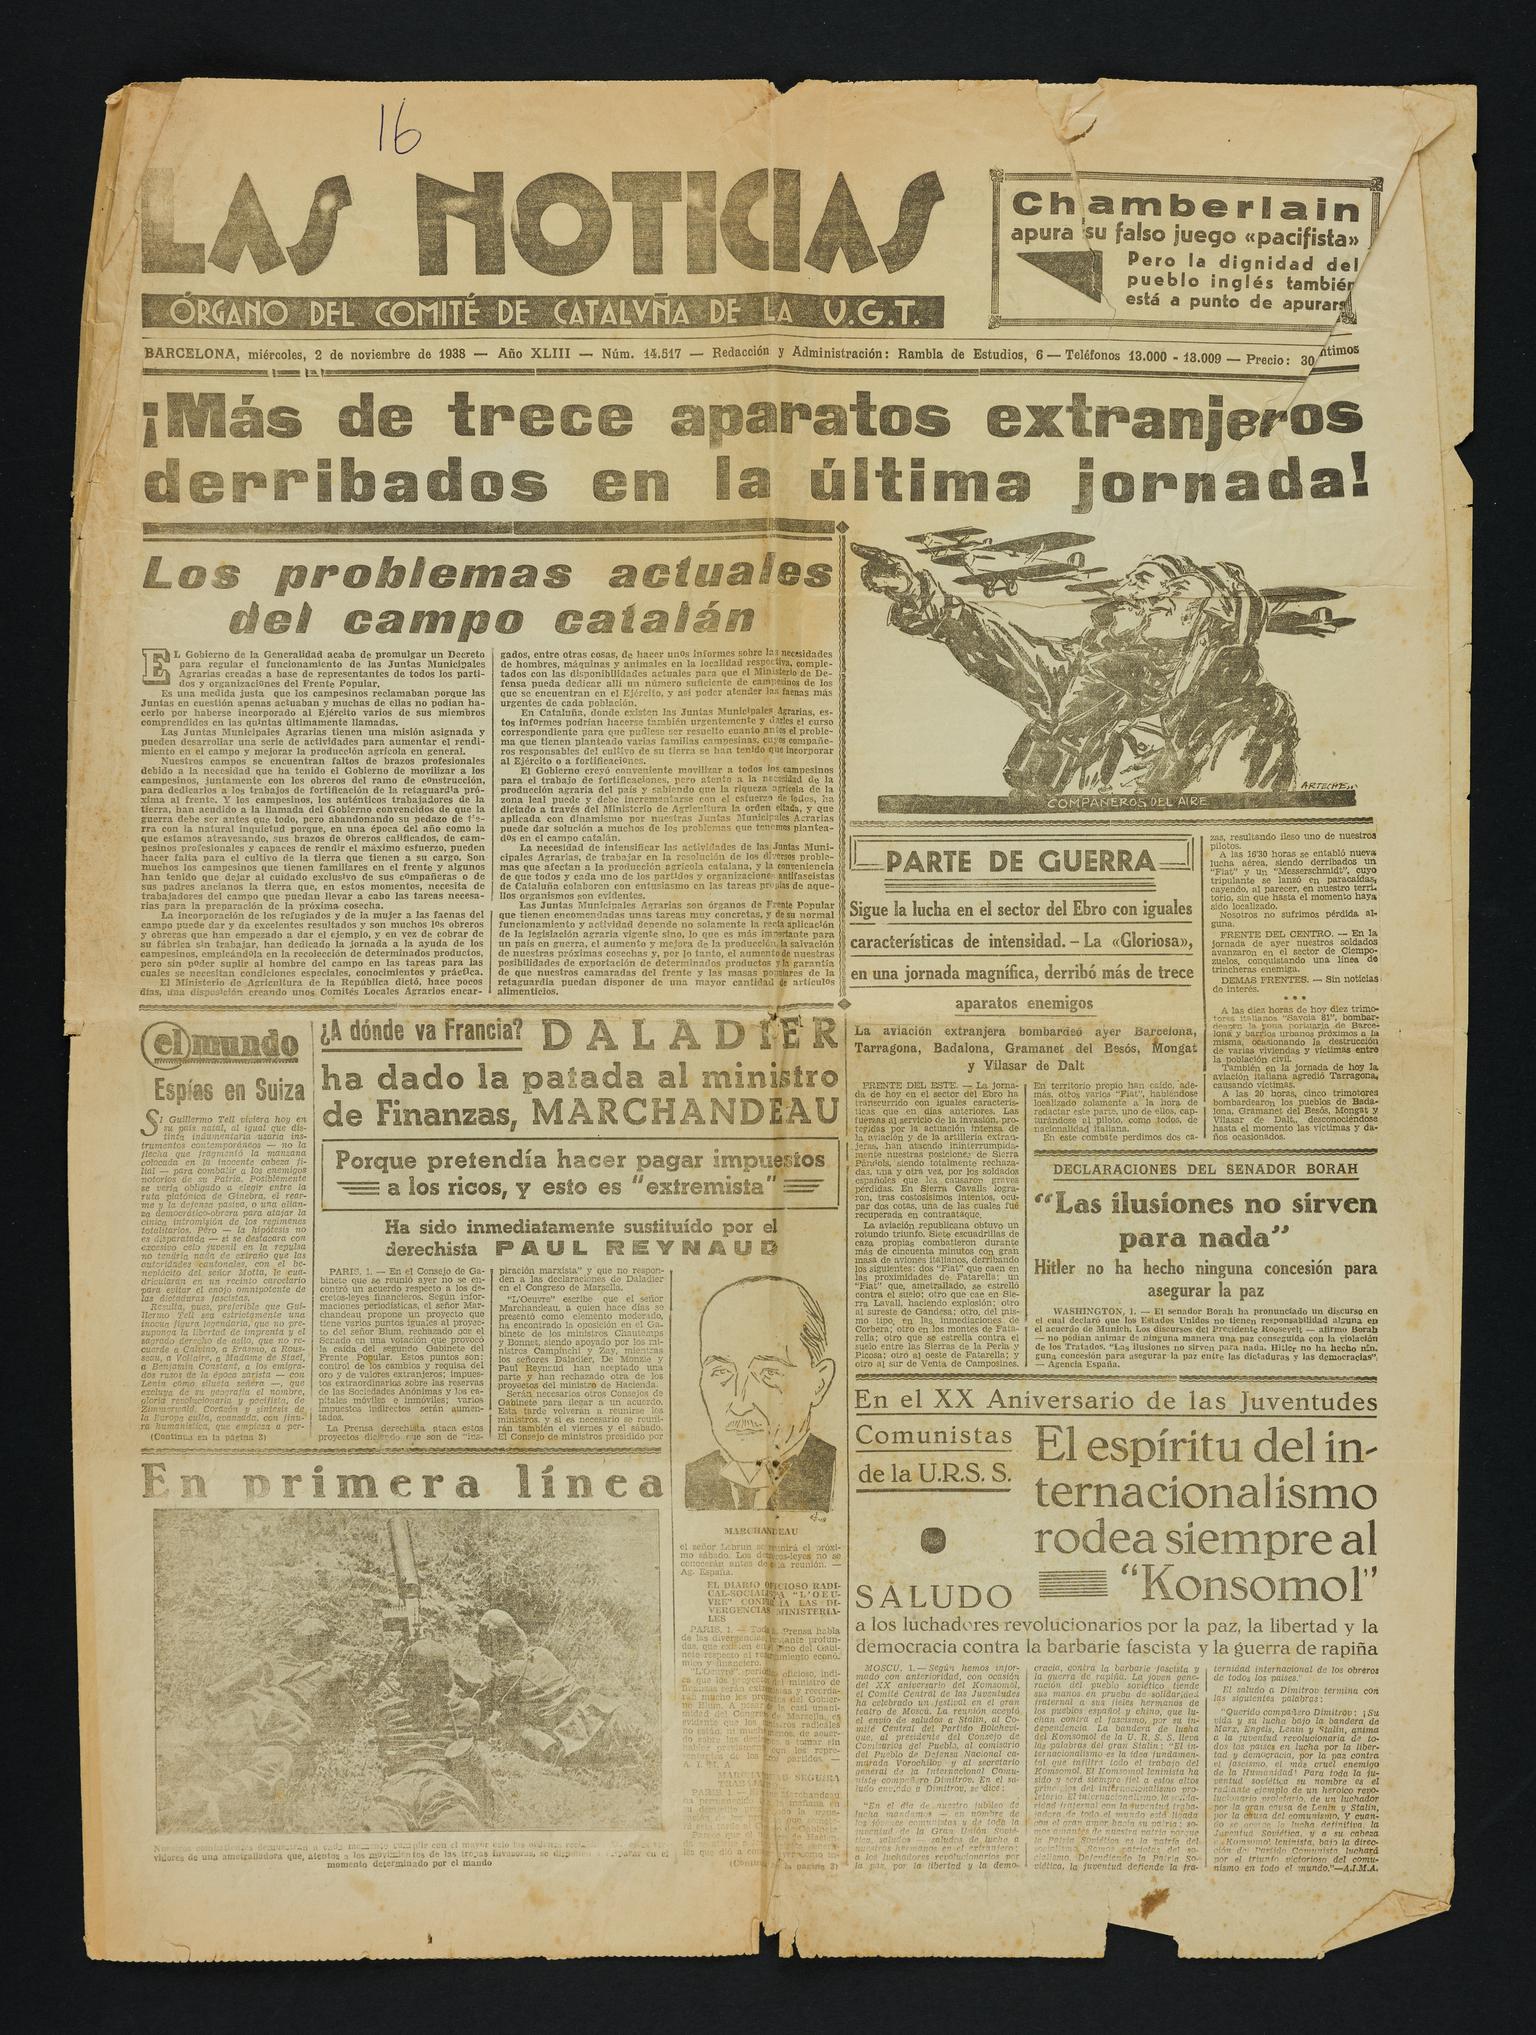 Las Noticias (newpaper)